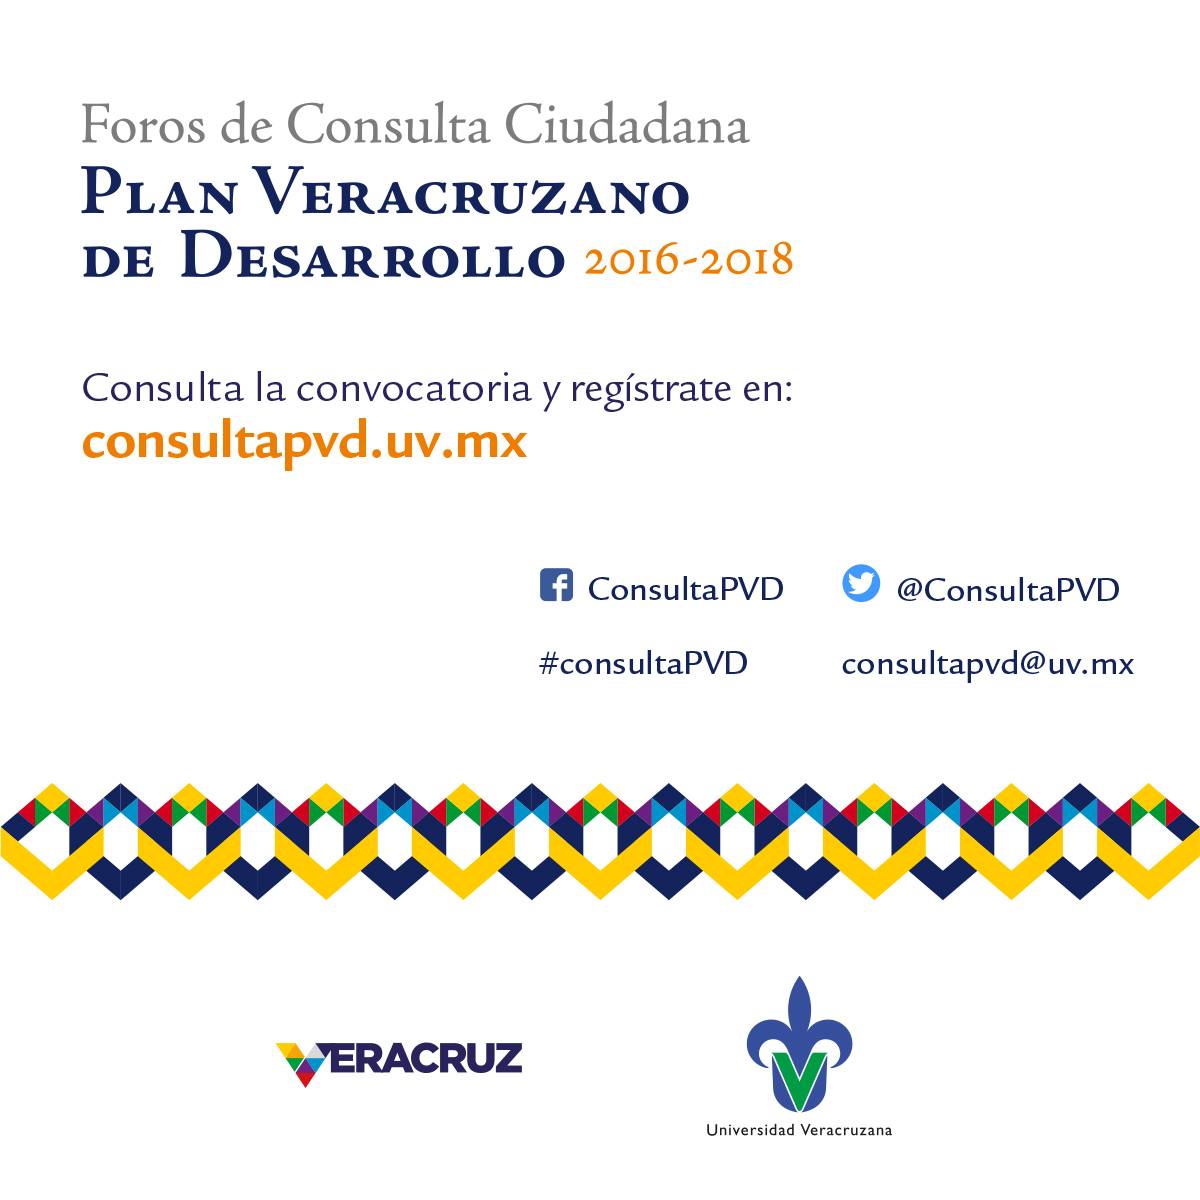 Foros de Consulta Ciudadana - Plan Veracruzano de Desarrollo 2016 - 2018